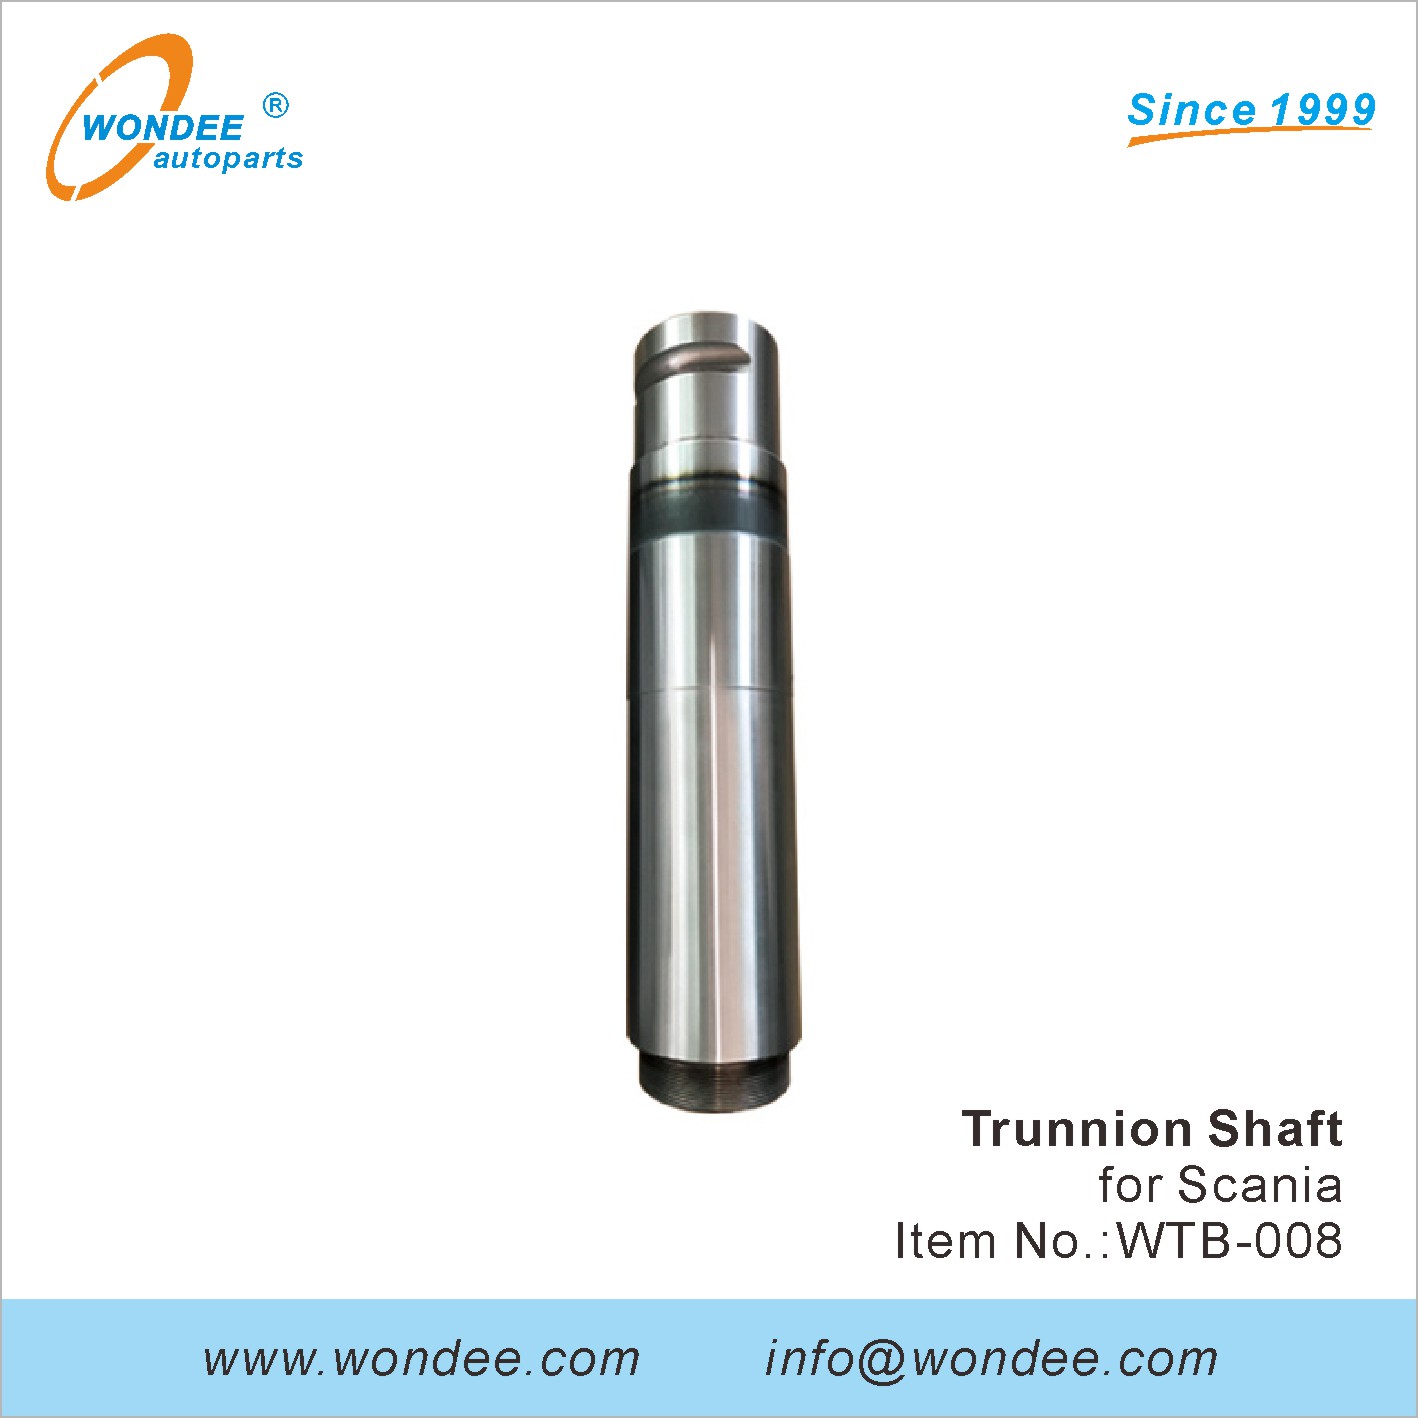 WONDEE trunnion shaft (8)